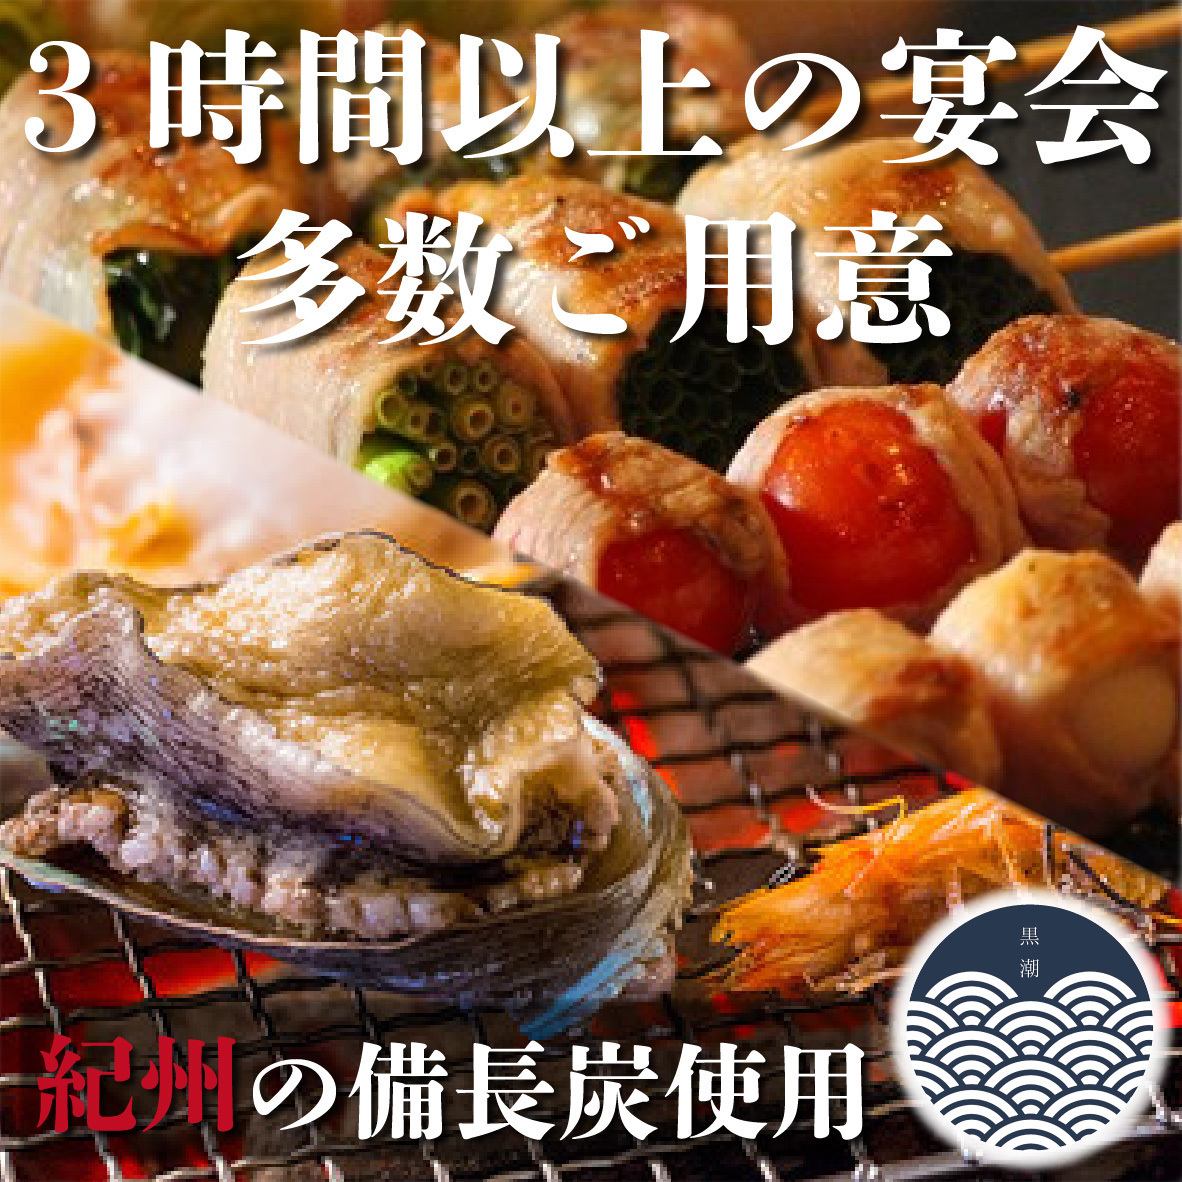 無限暢飲3,480日圓（含稅）～!!還有多種豪華套餐！